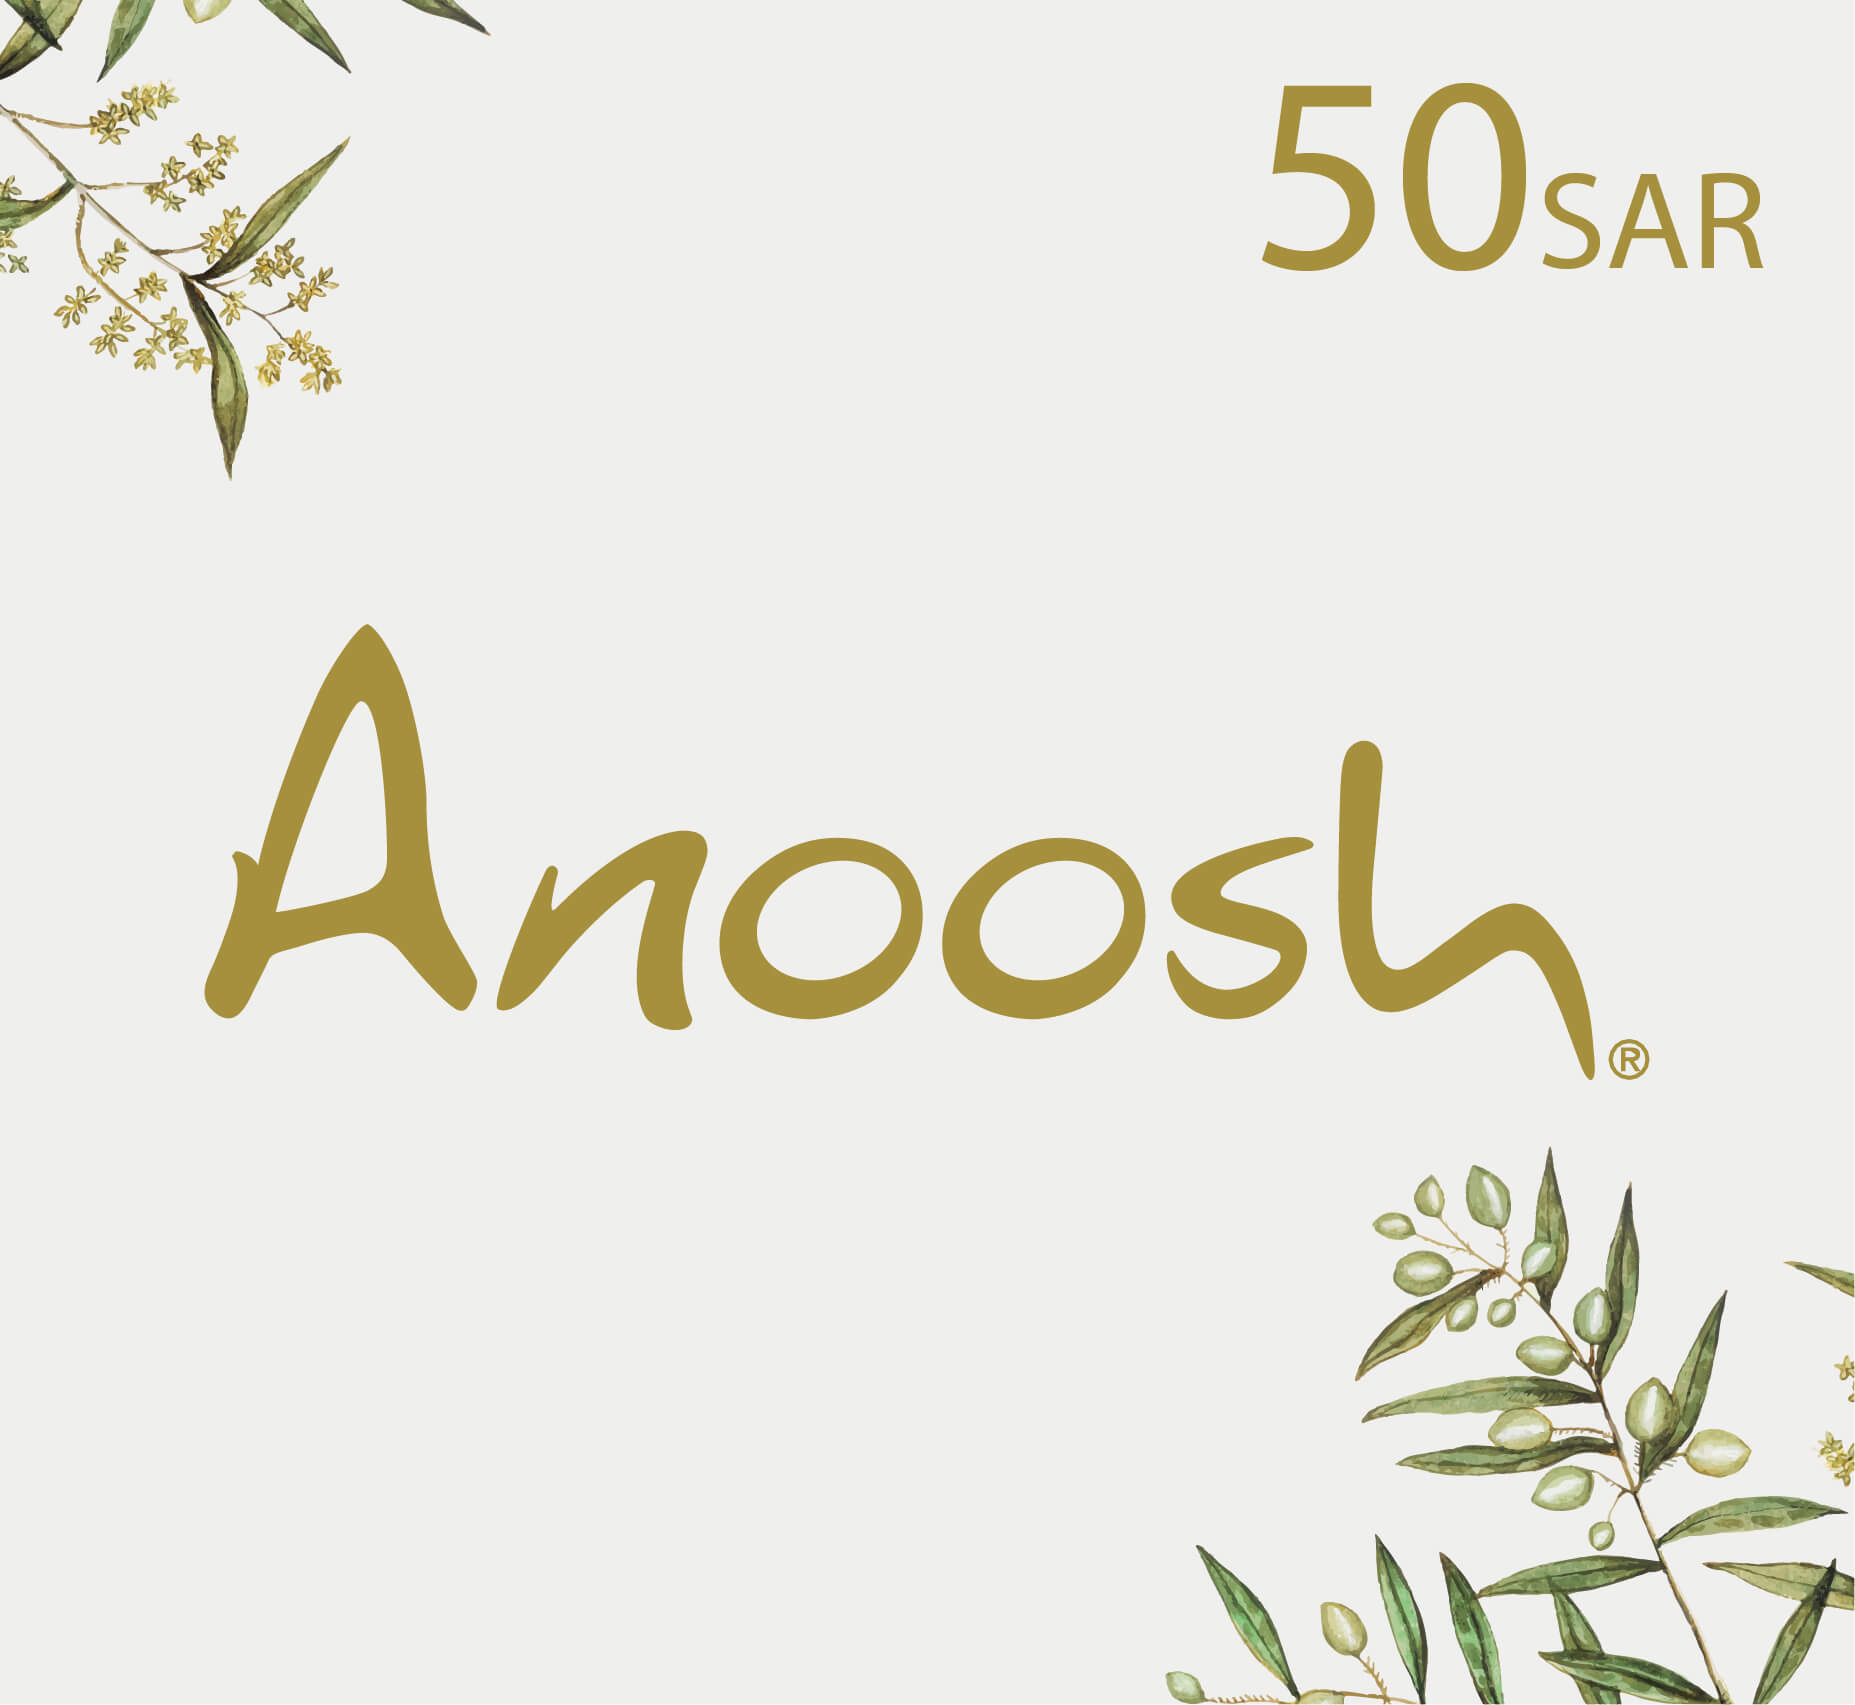 Anoosh Gift Card - 50 SAR